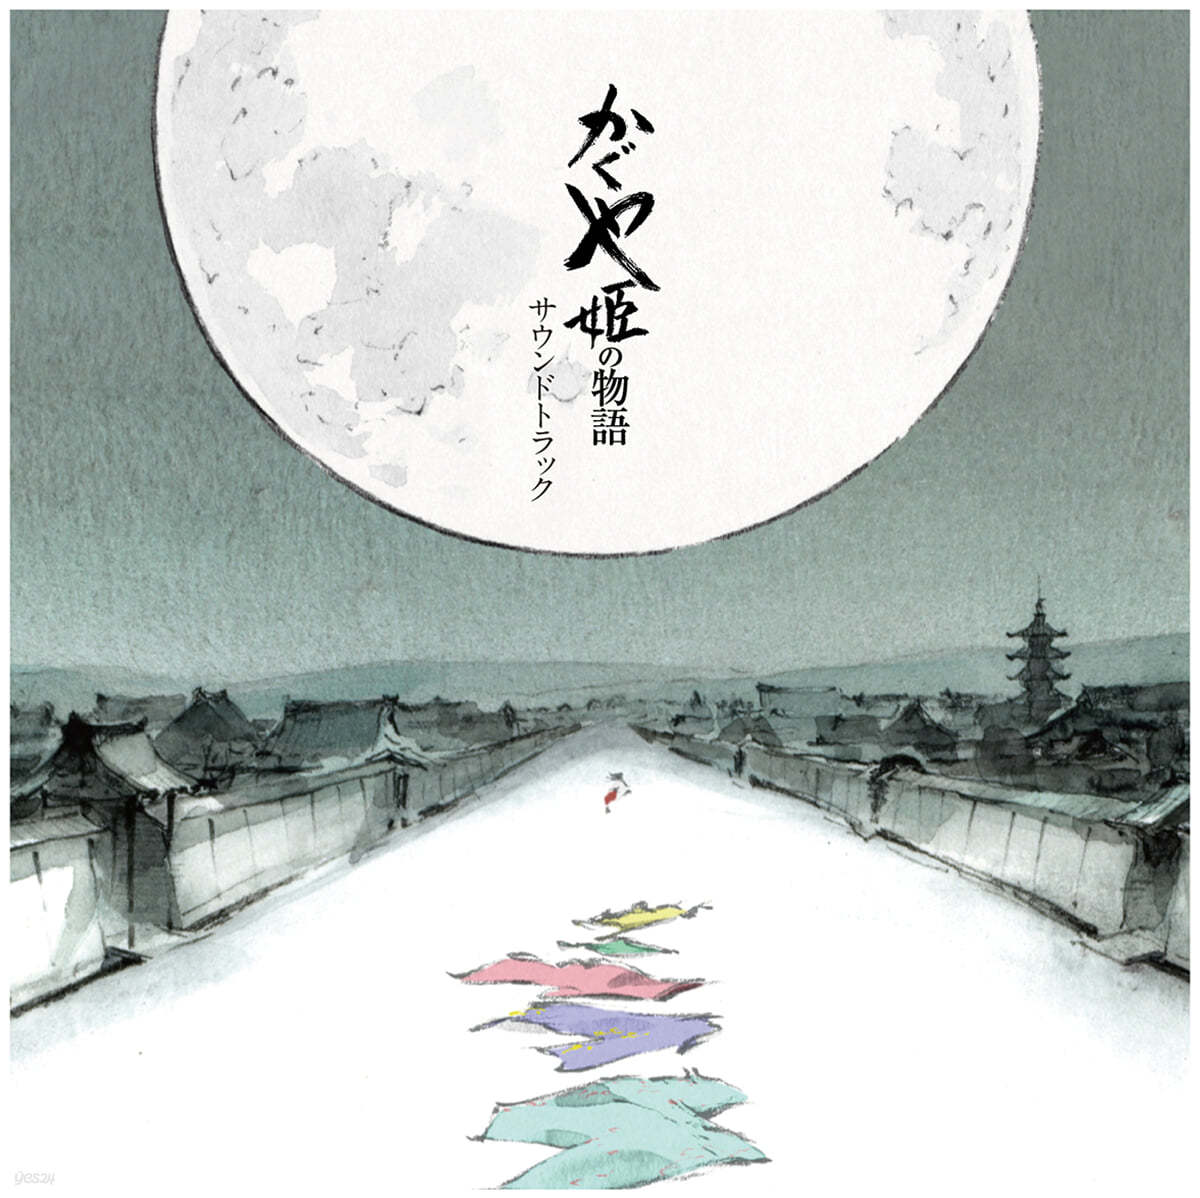 가구야 공주 이야기 영화음악 (The Tale Of The Princess Kaguya OST by Joe Hisaishi) [2LP] 